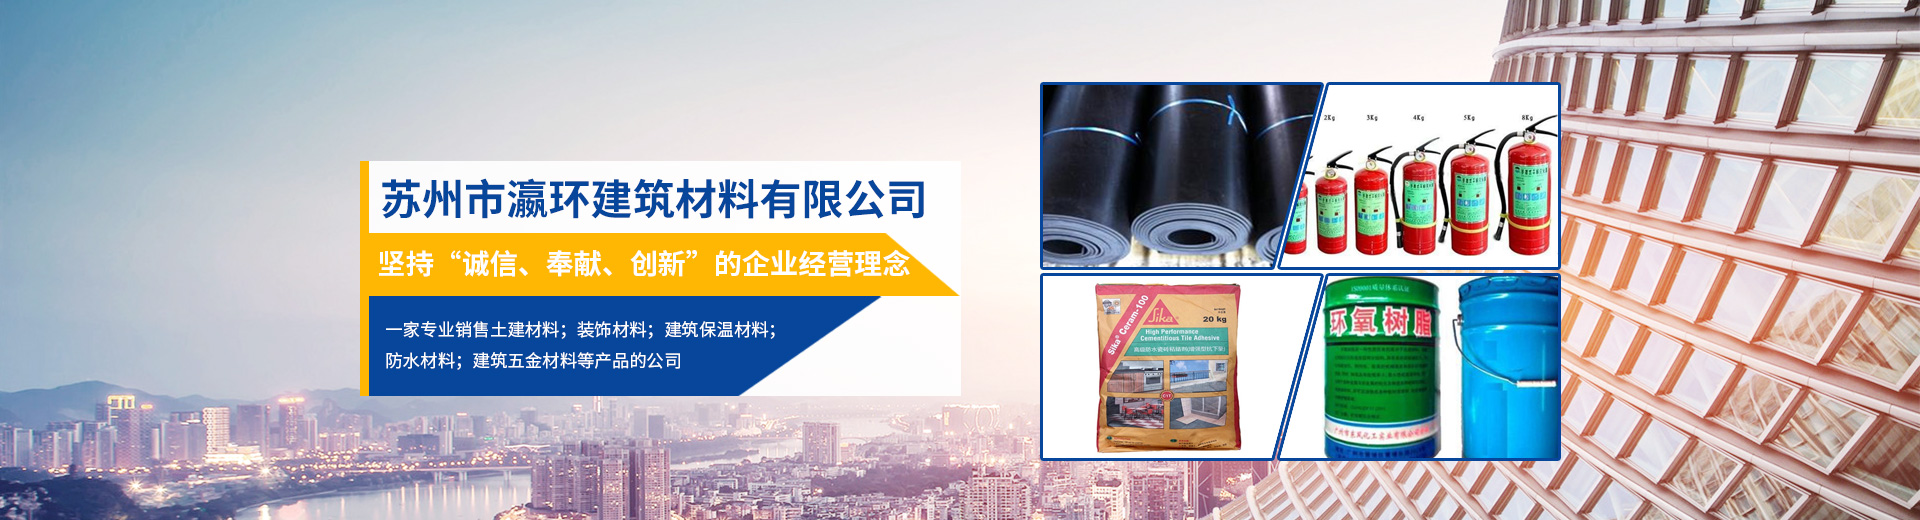 必赢bwin线路检测中心(中国)股份有限公司_产品4973